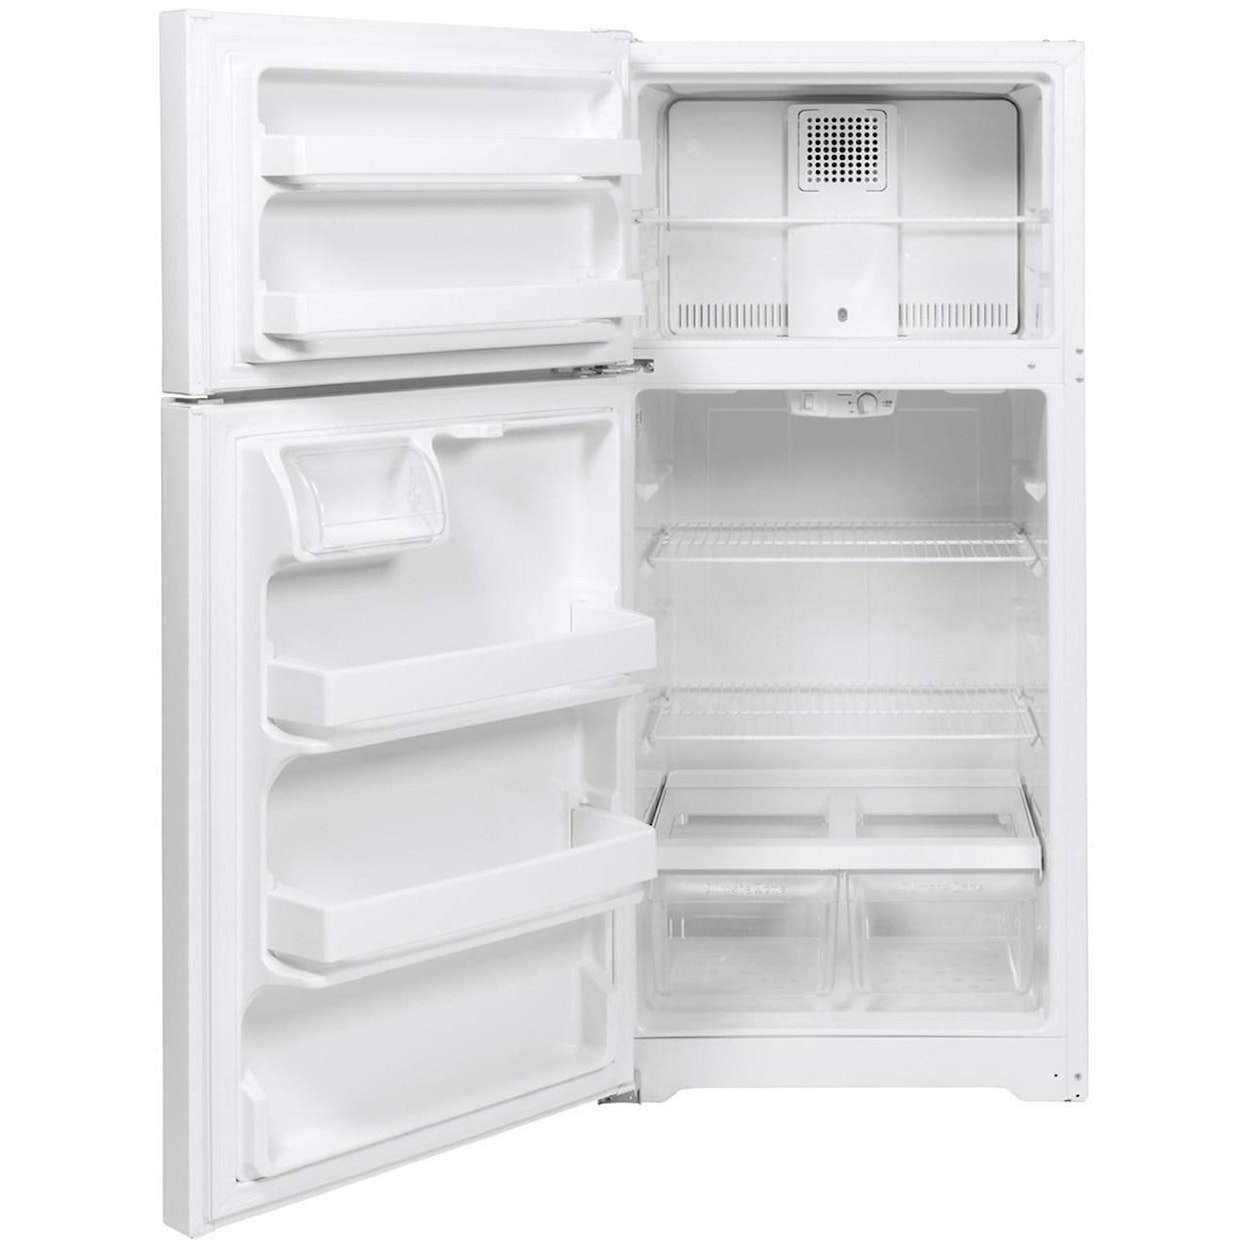 GE Appliances GE Top-Freezer Refrigerators GE® ENERGY STAR® 15.6 Cu. Ft. Top-Freezer Re